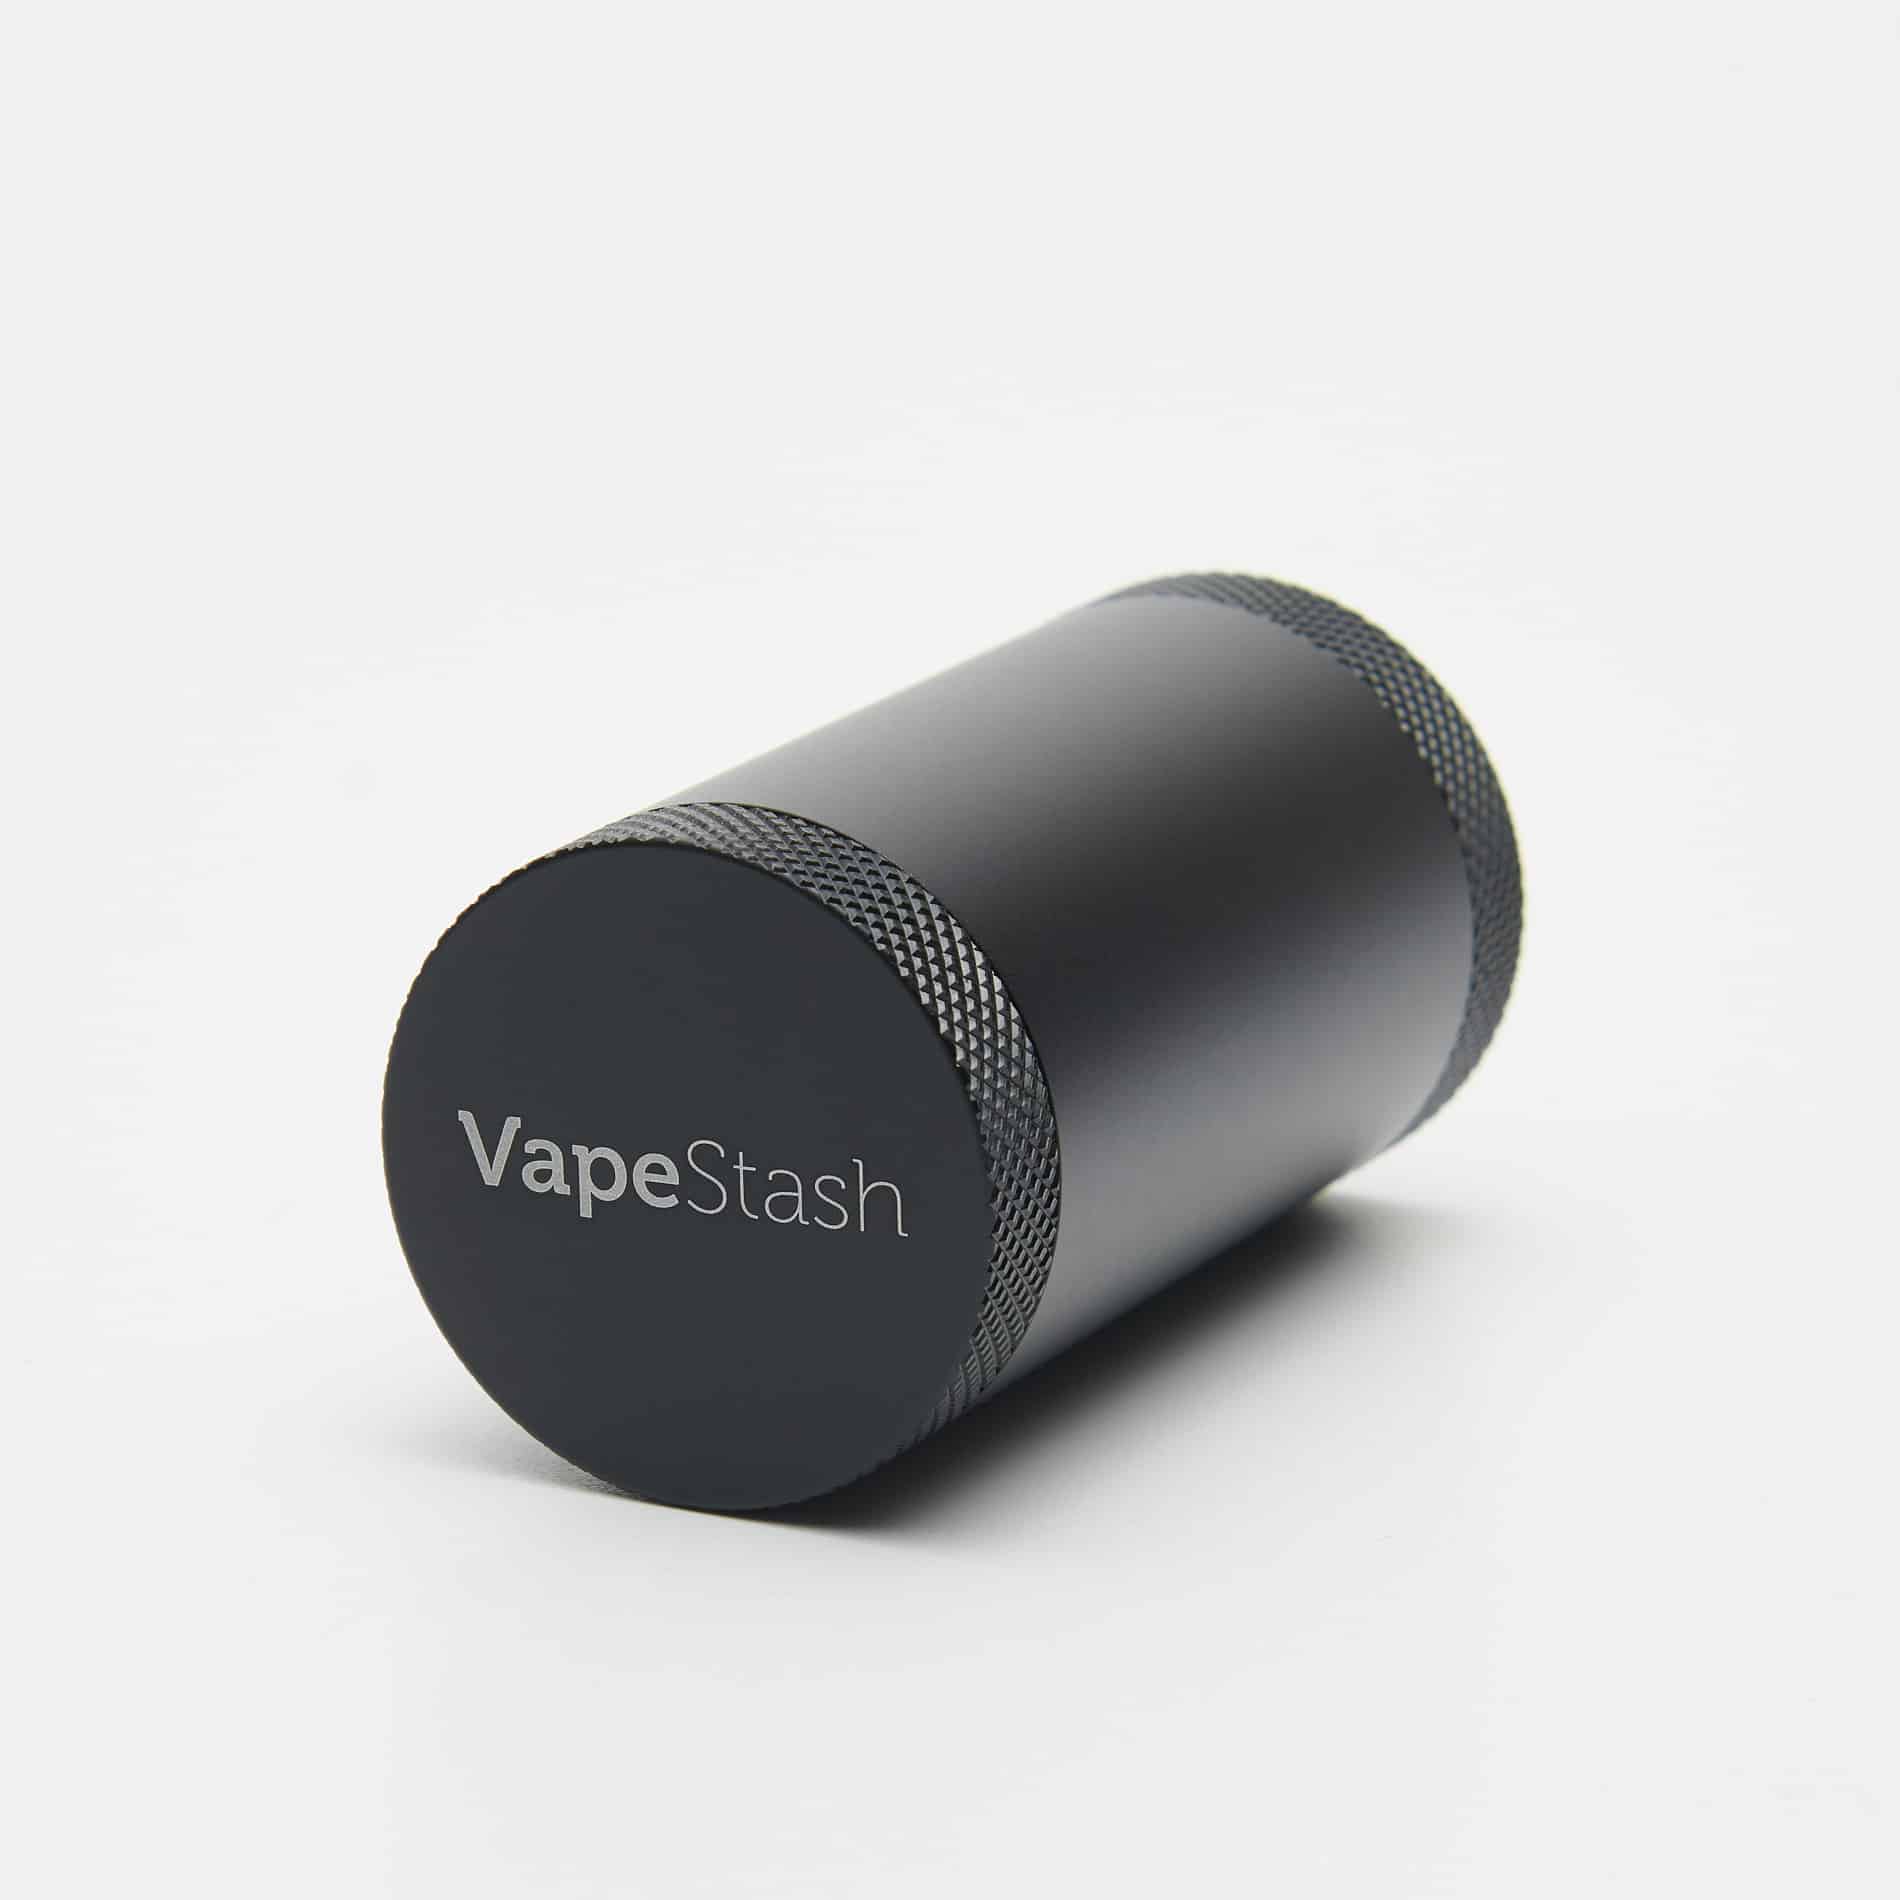 VapeStash wyprodukowała firma VapeFully. To pojemnik na susz